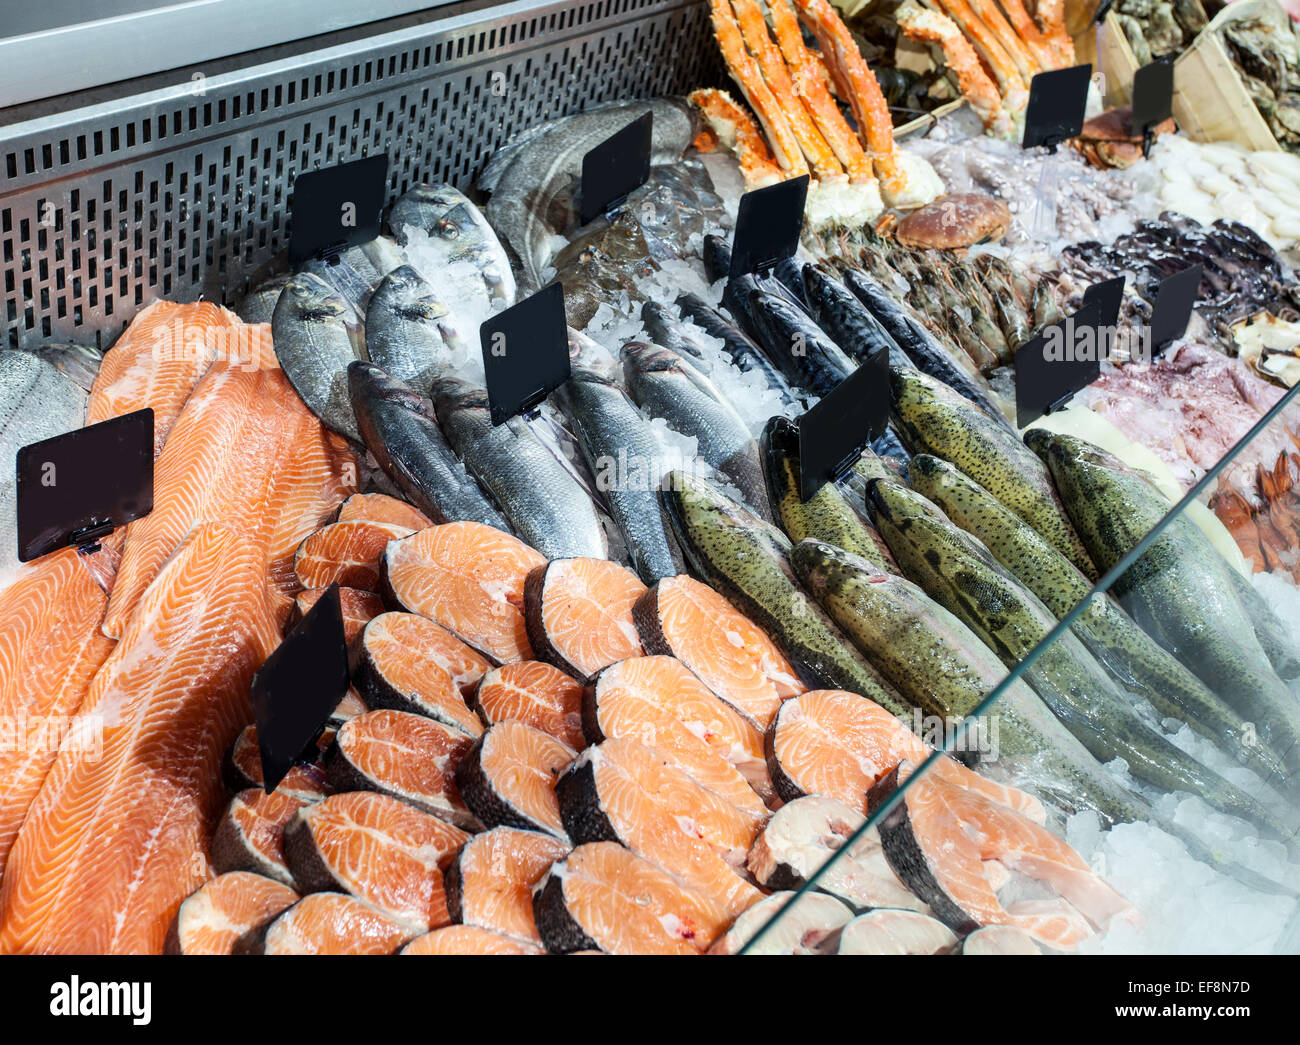 Scelta di pesce fresco nel banco frigo. Immagine ravvicinata. Foto Stock